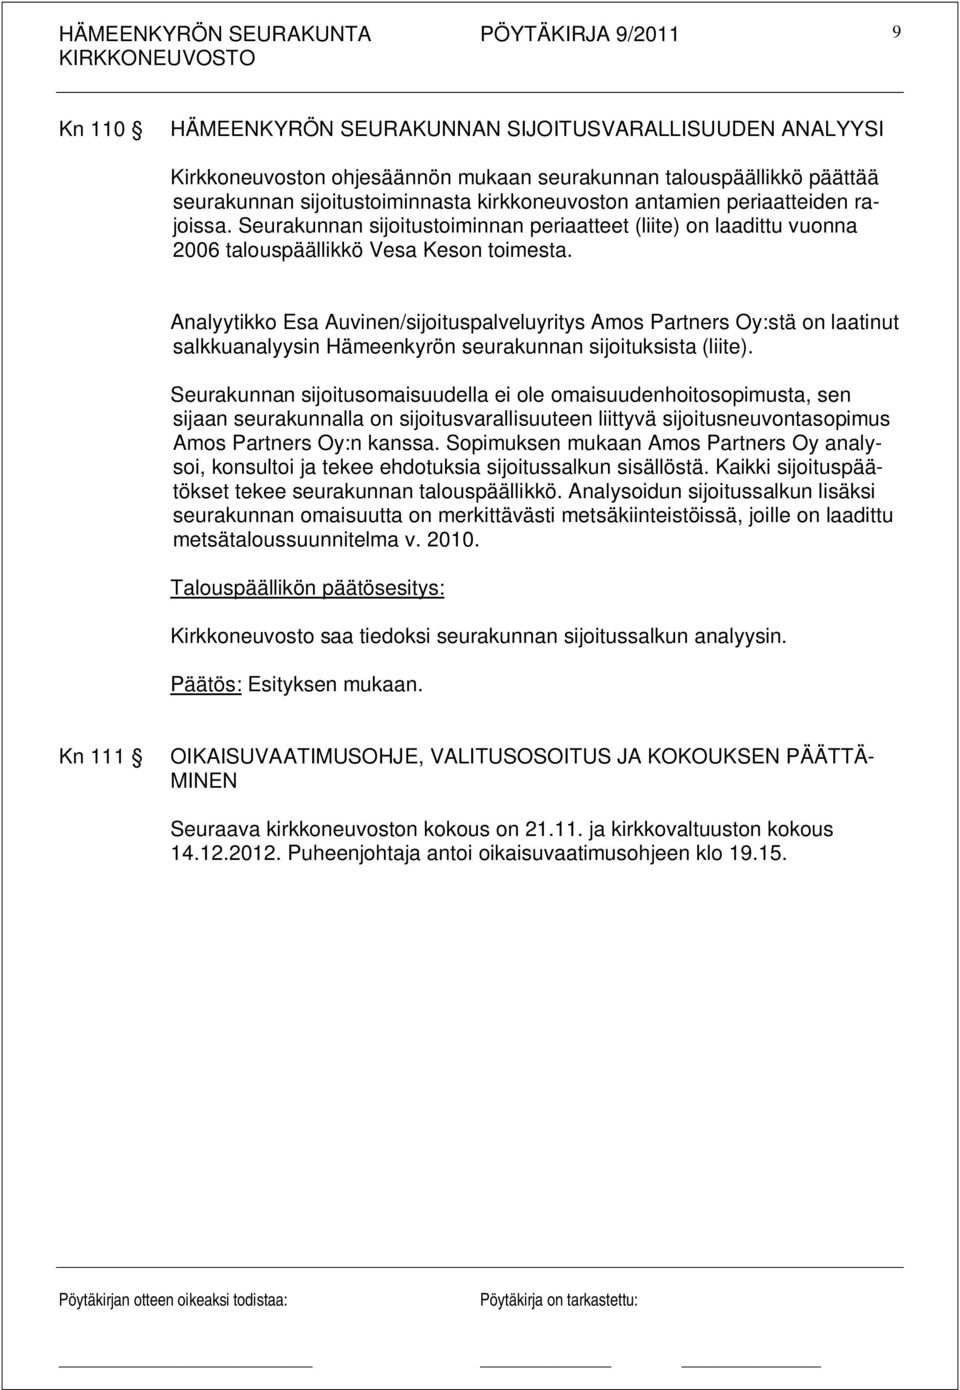 Analyytikko Esa Auvinen/sijoituspalveluyritys Amos Partners Oy:stä on laatinut salkkuanalyysin Hämeenkyrön seurakunnan sijoituksista (liite).